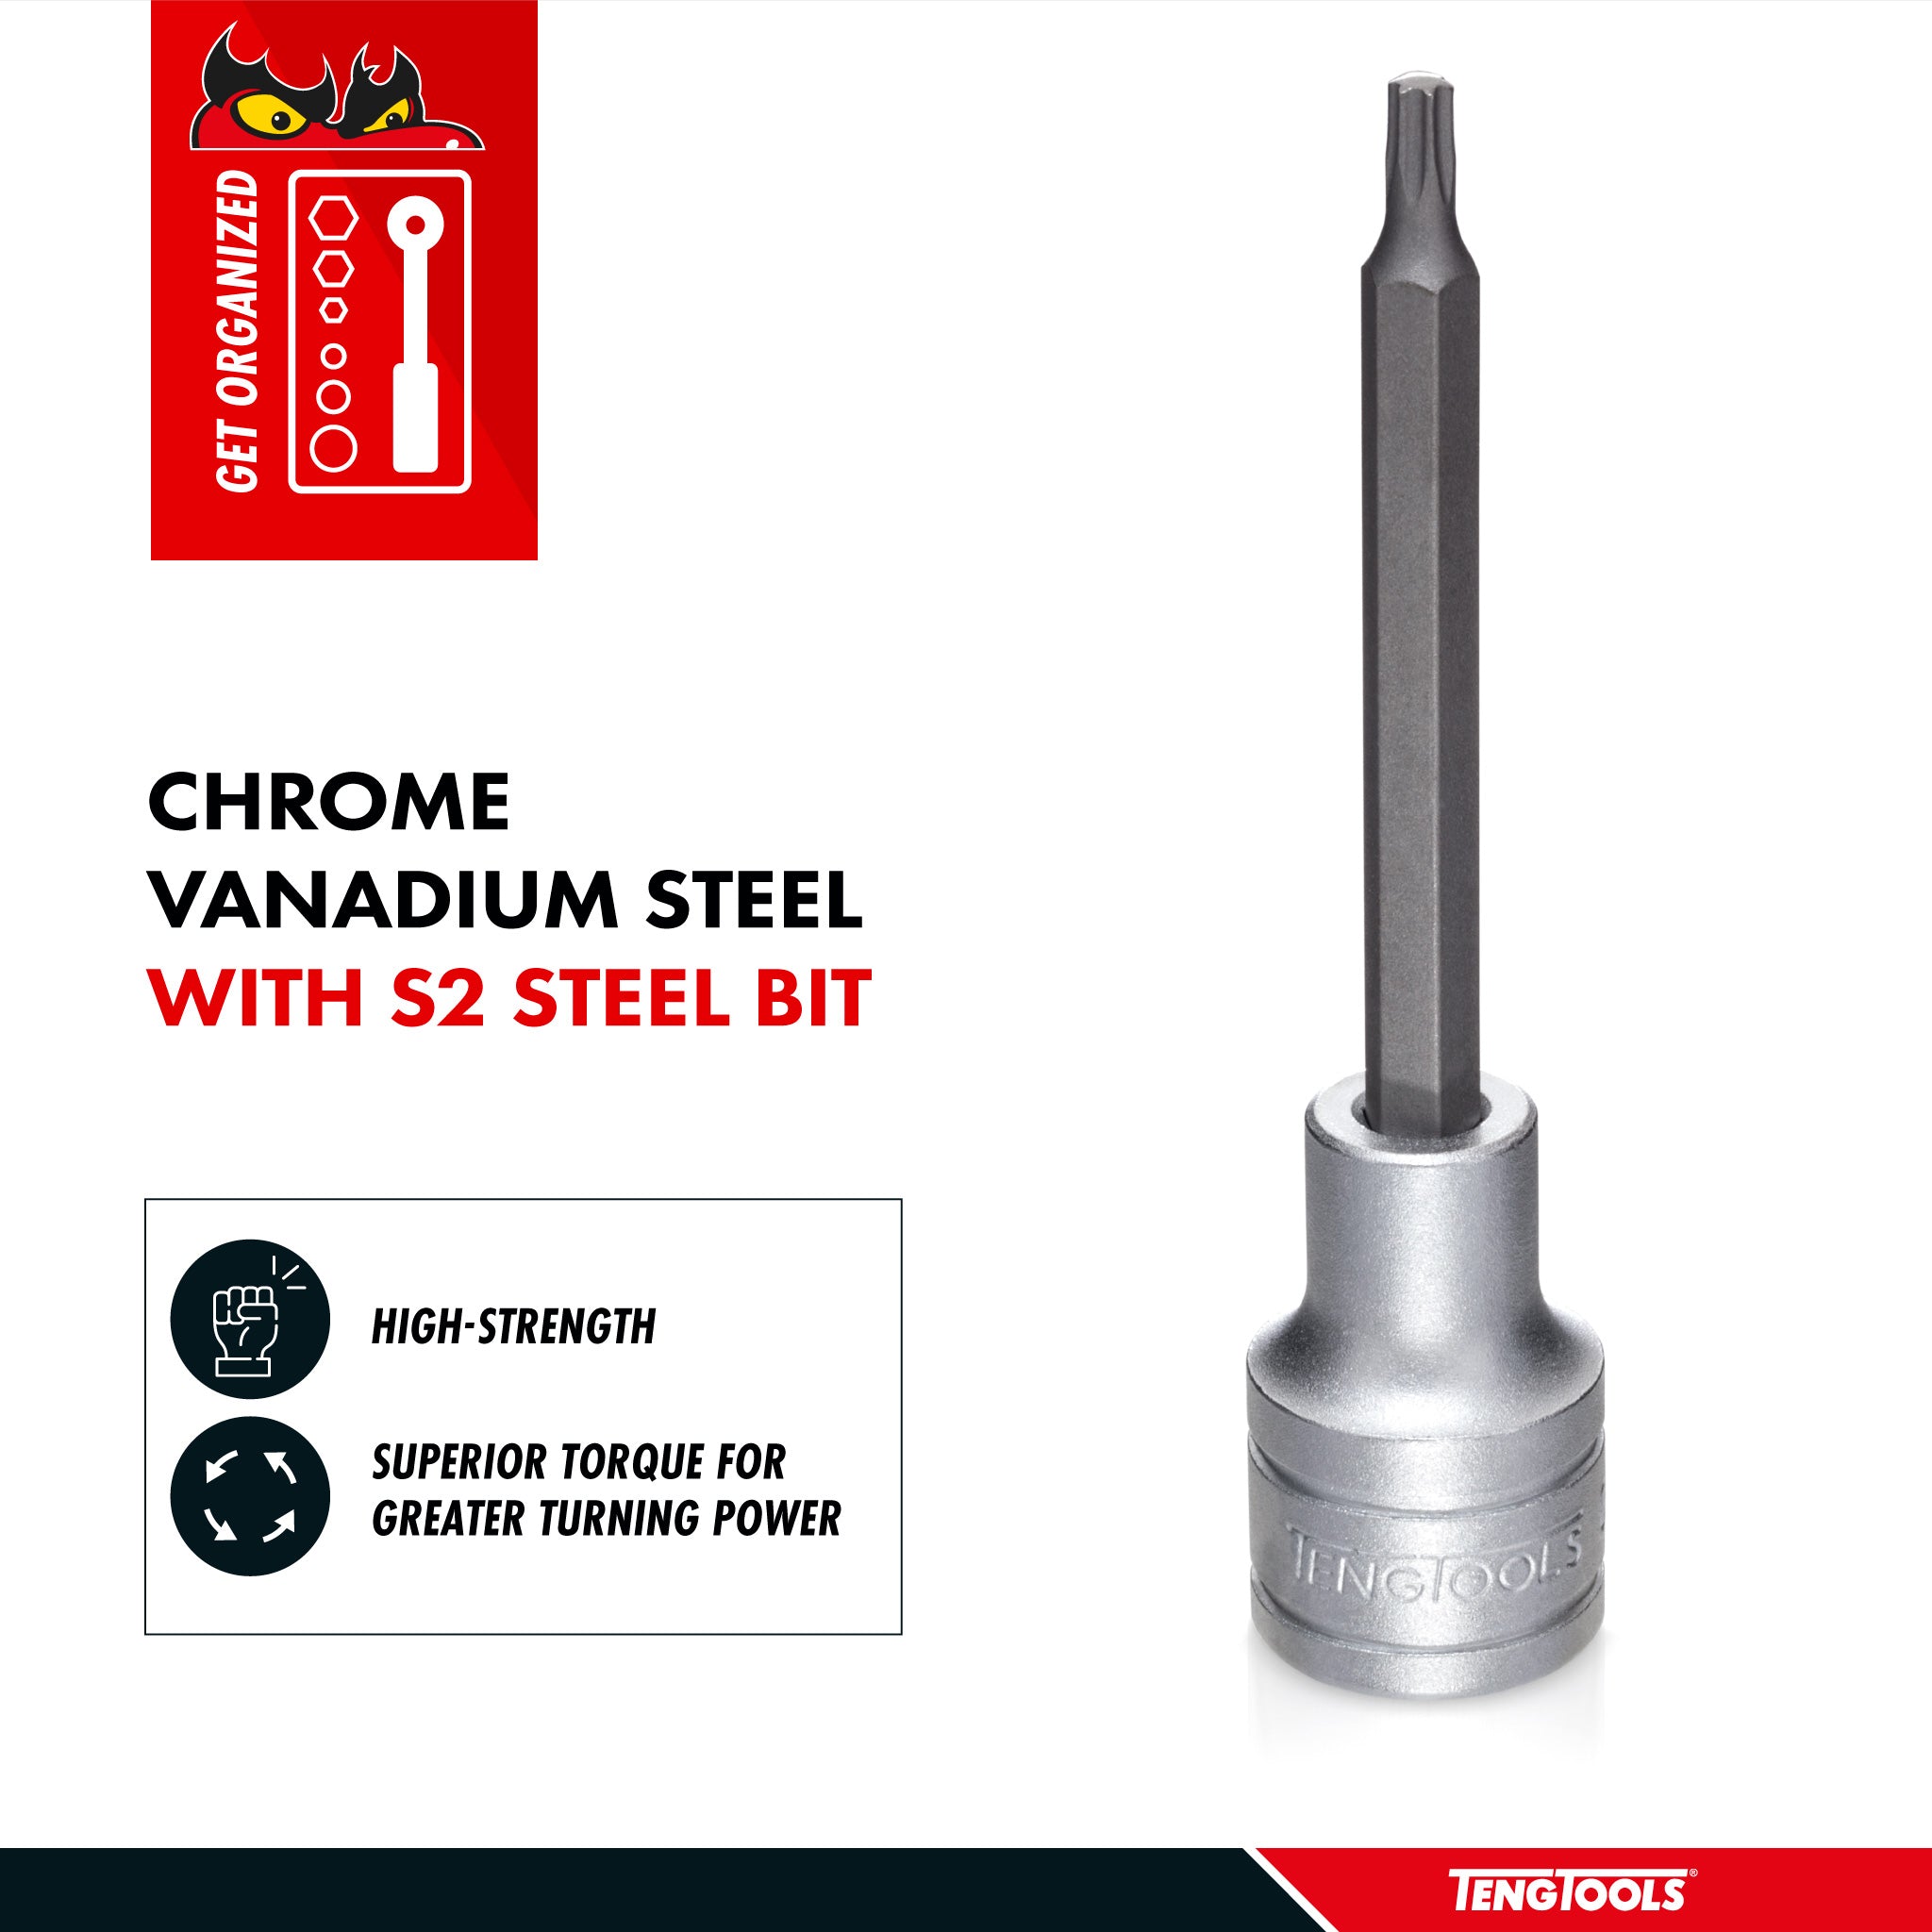 Teng Tools 1/2 Inch Drive Metric Torx TX 3.9 Inch Extra Long Chrome Vanadium Sockets - TX40